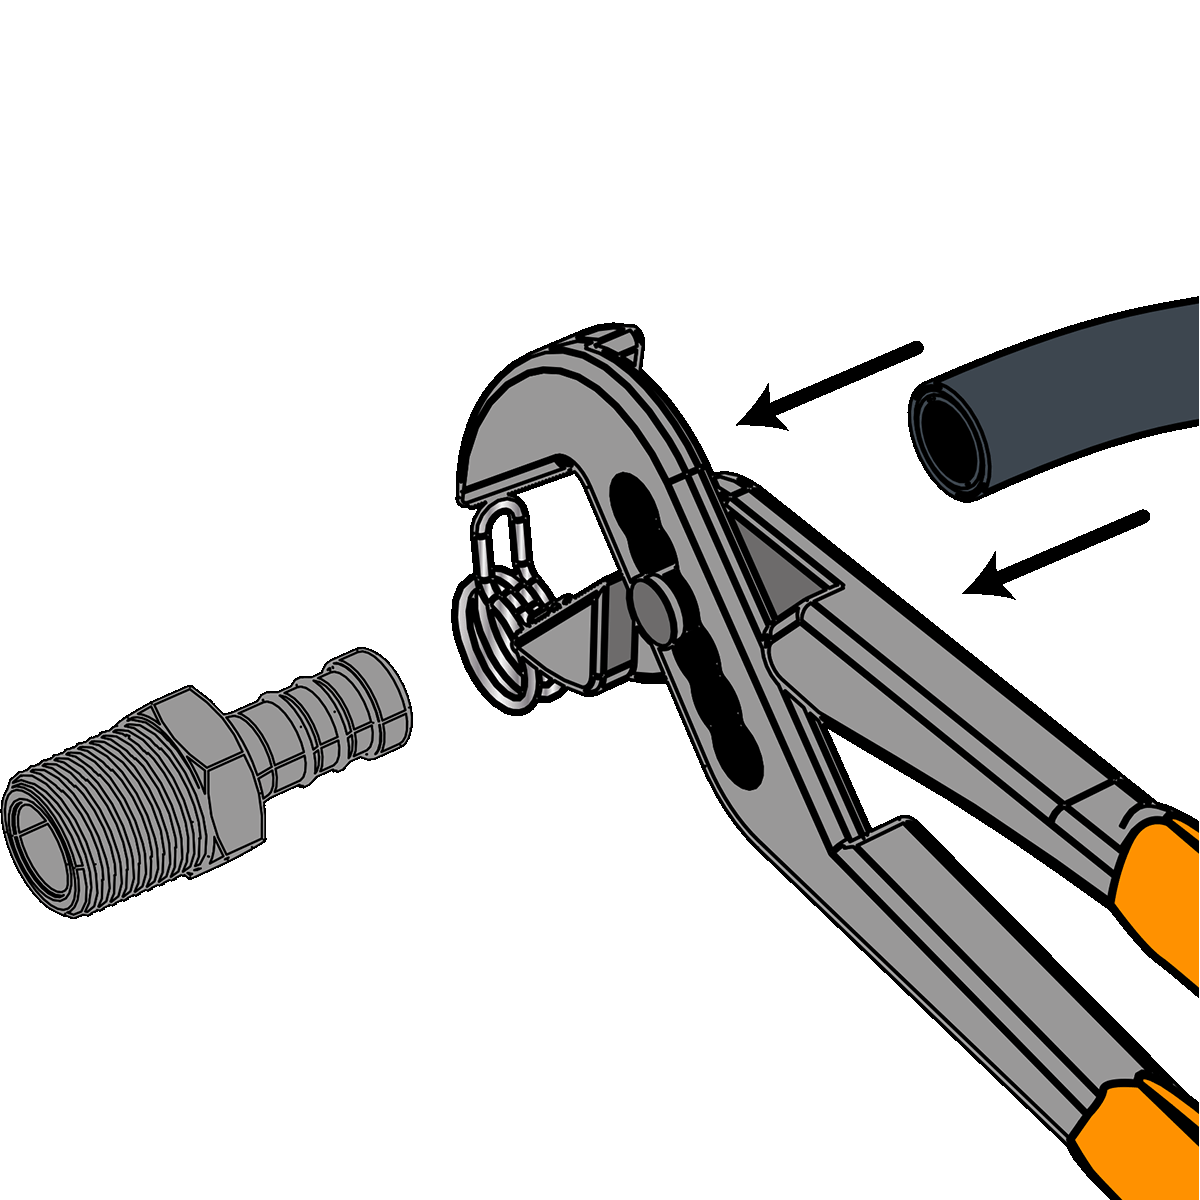 Appliquer le collier de serrage sur le tuyau à l'aide d'une pince à bec effilé, étape 1.